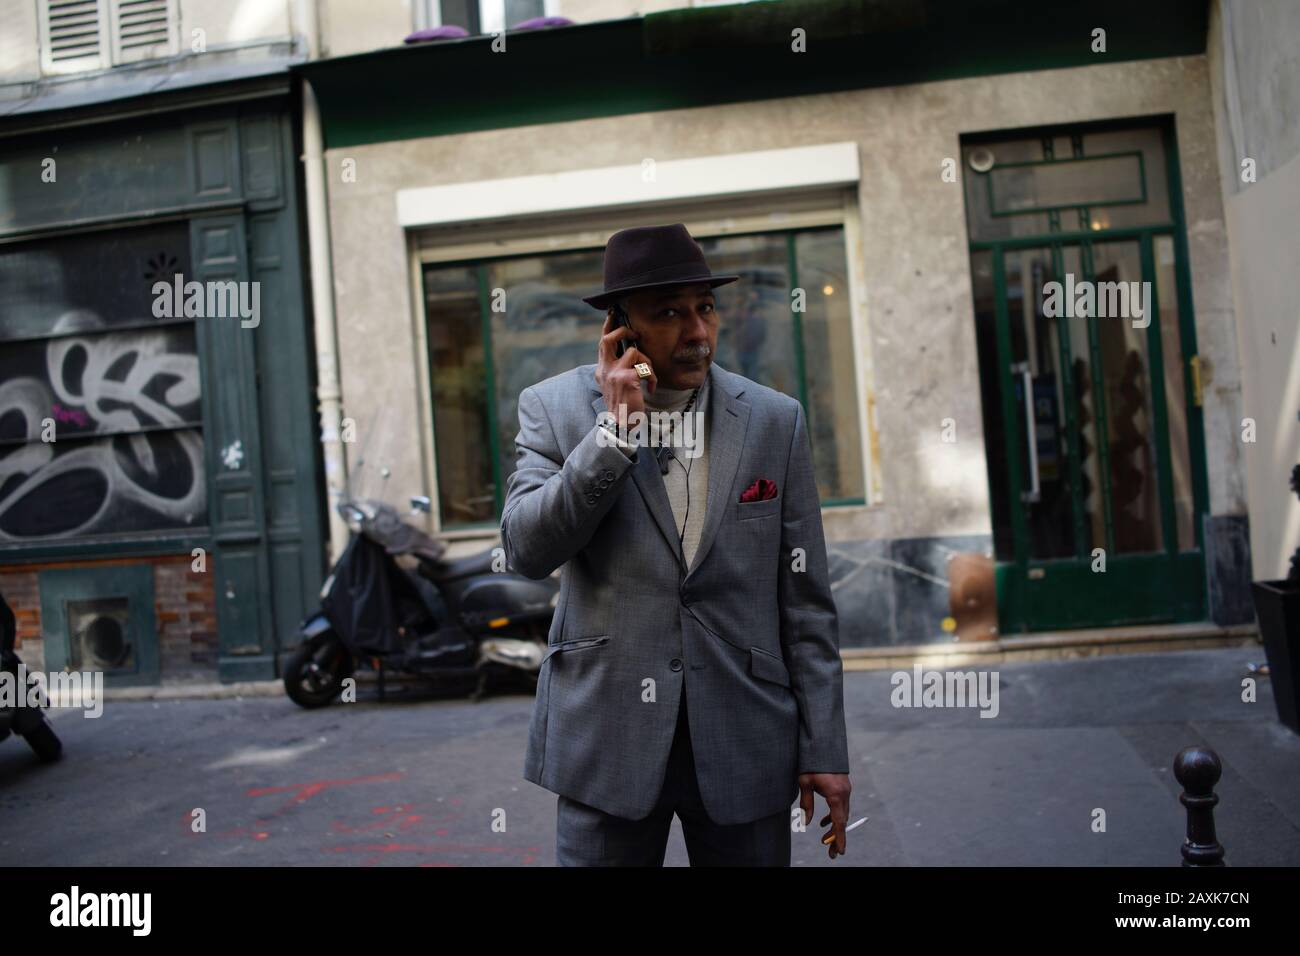 Hombre en traje gris y sombrero sosteniendo el teléfono móvil a la oreja, fumar - foto de la calle Foto de stock